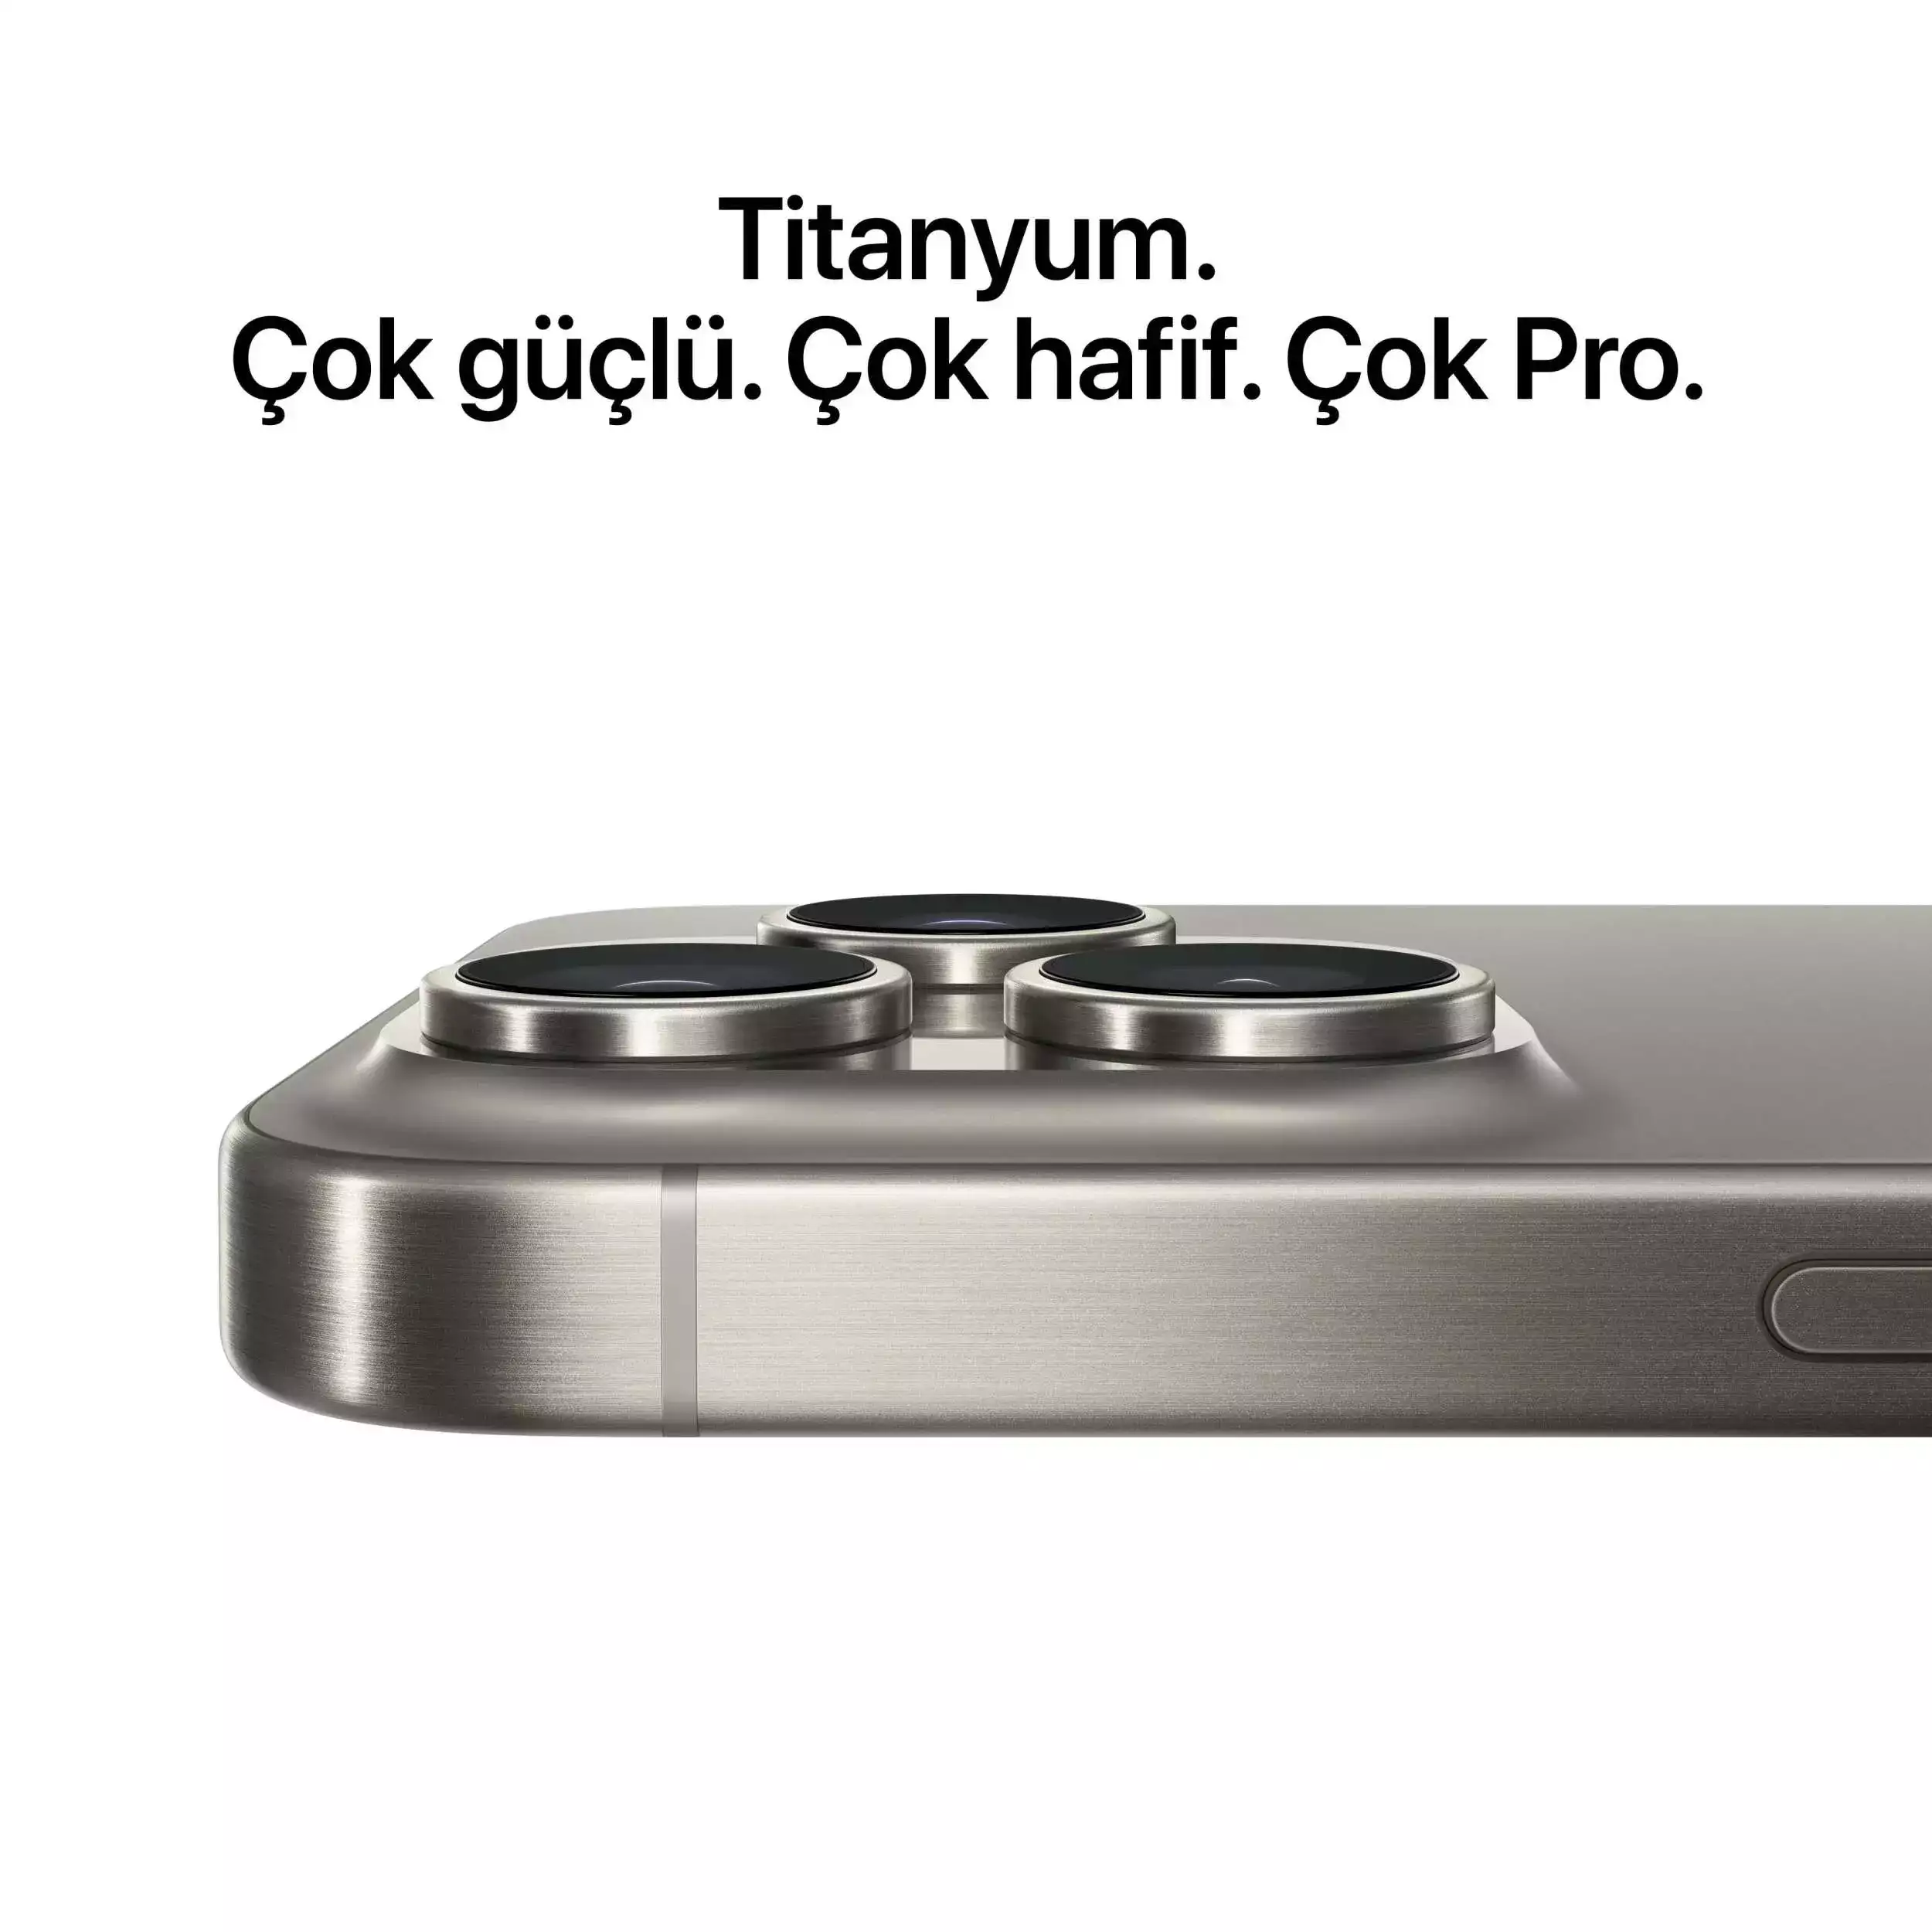 iPhone 15 Pro Max 1TB Natürel Titanyum MU7J3TU/A